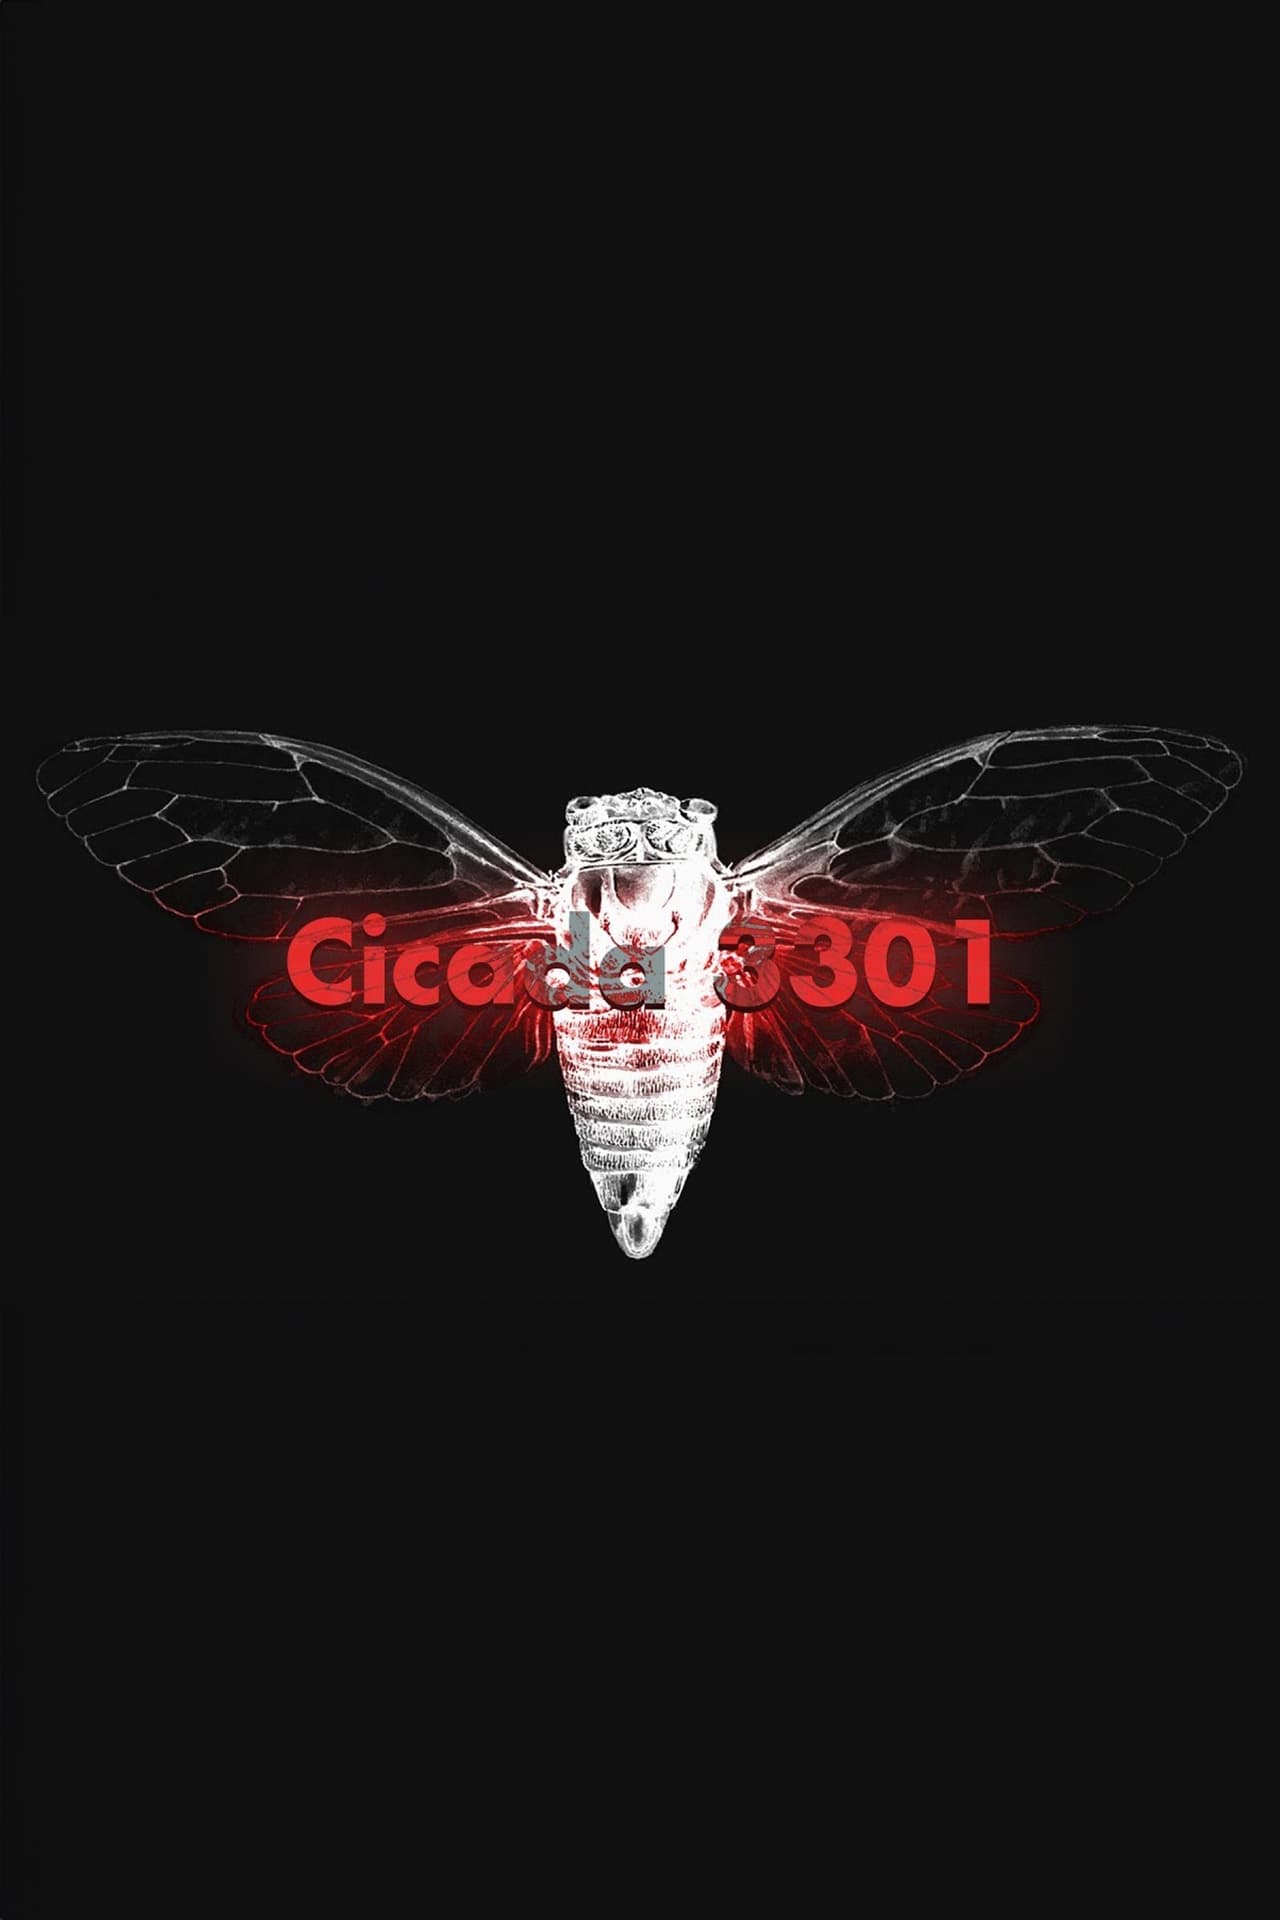 Cicada 3301: An Internet Mystery